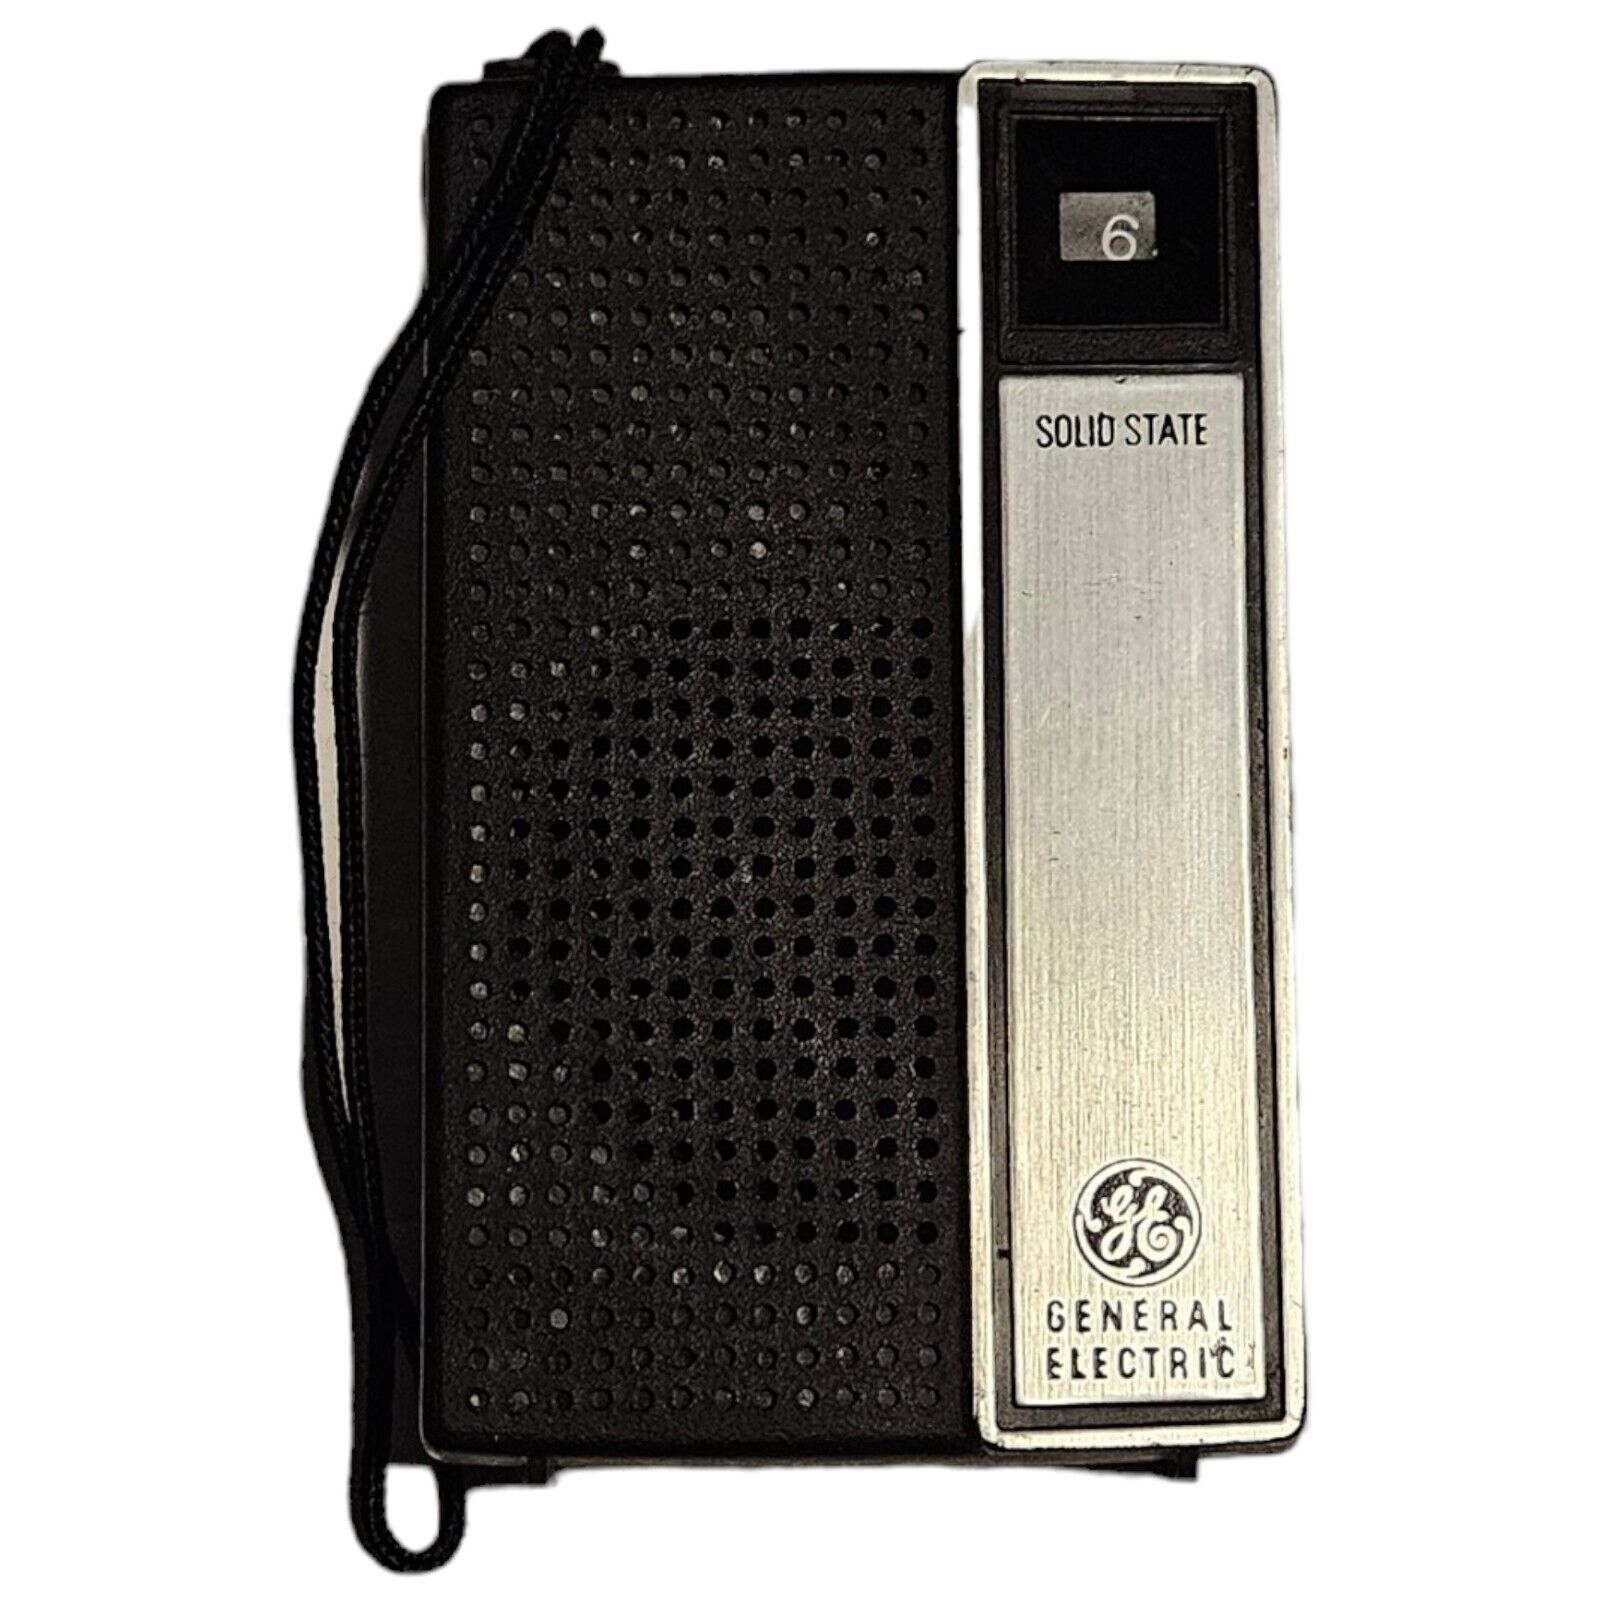 Vintage 1970s GENERAL ELECTRIC Model 7-2705A Black AM Transistor Radio - Works 